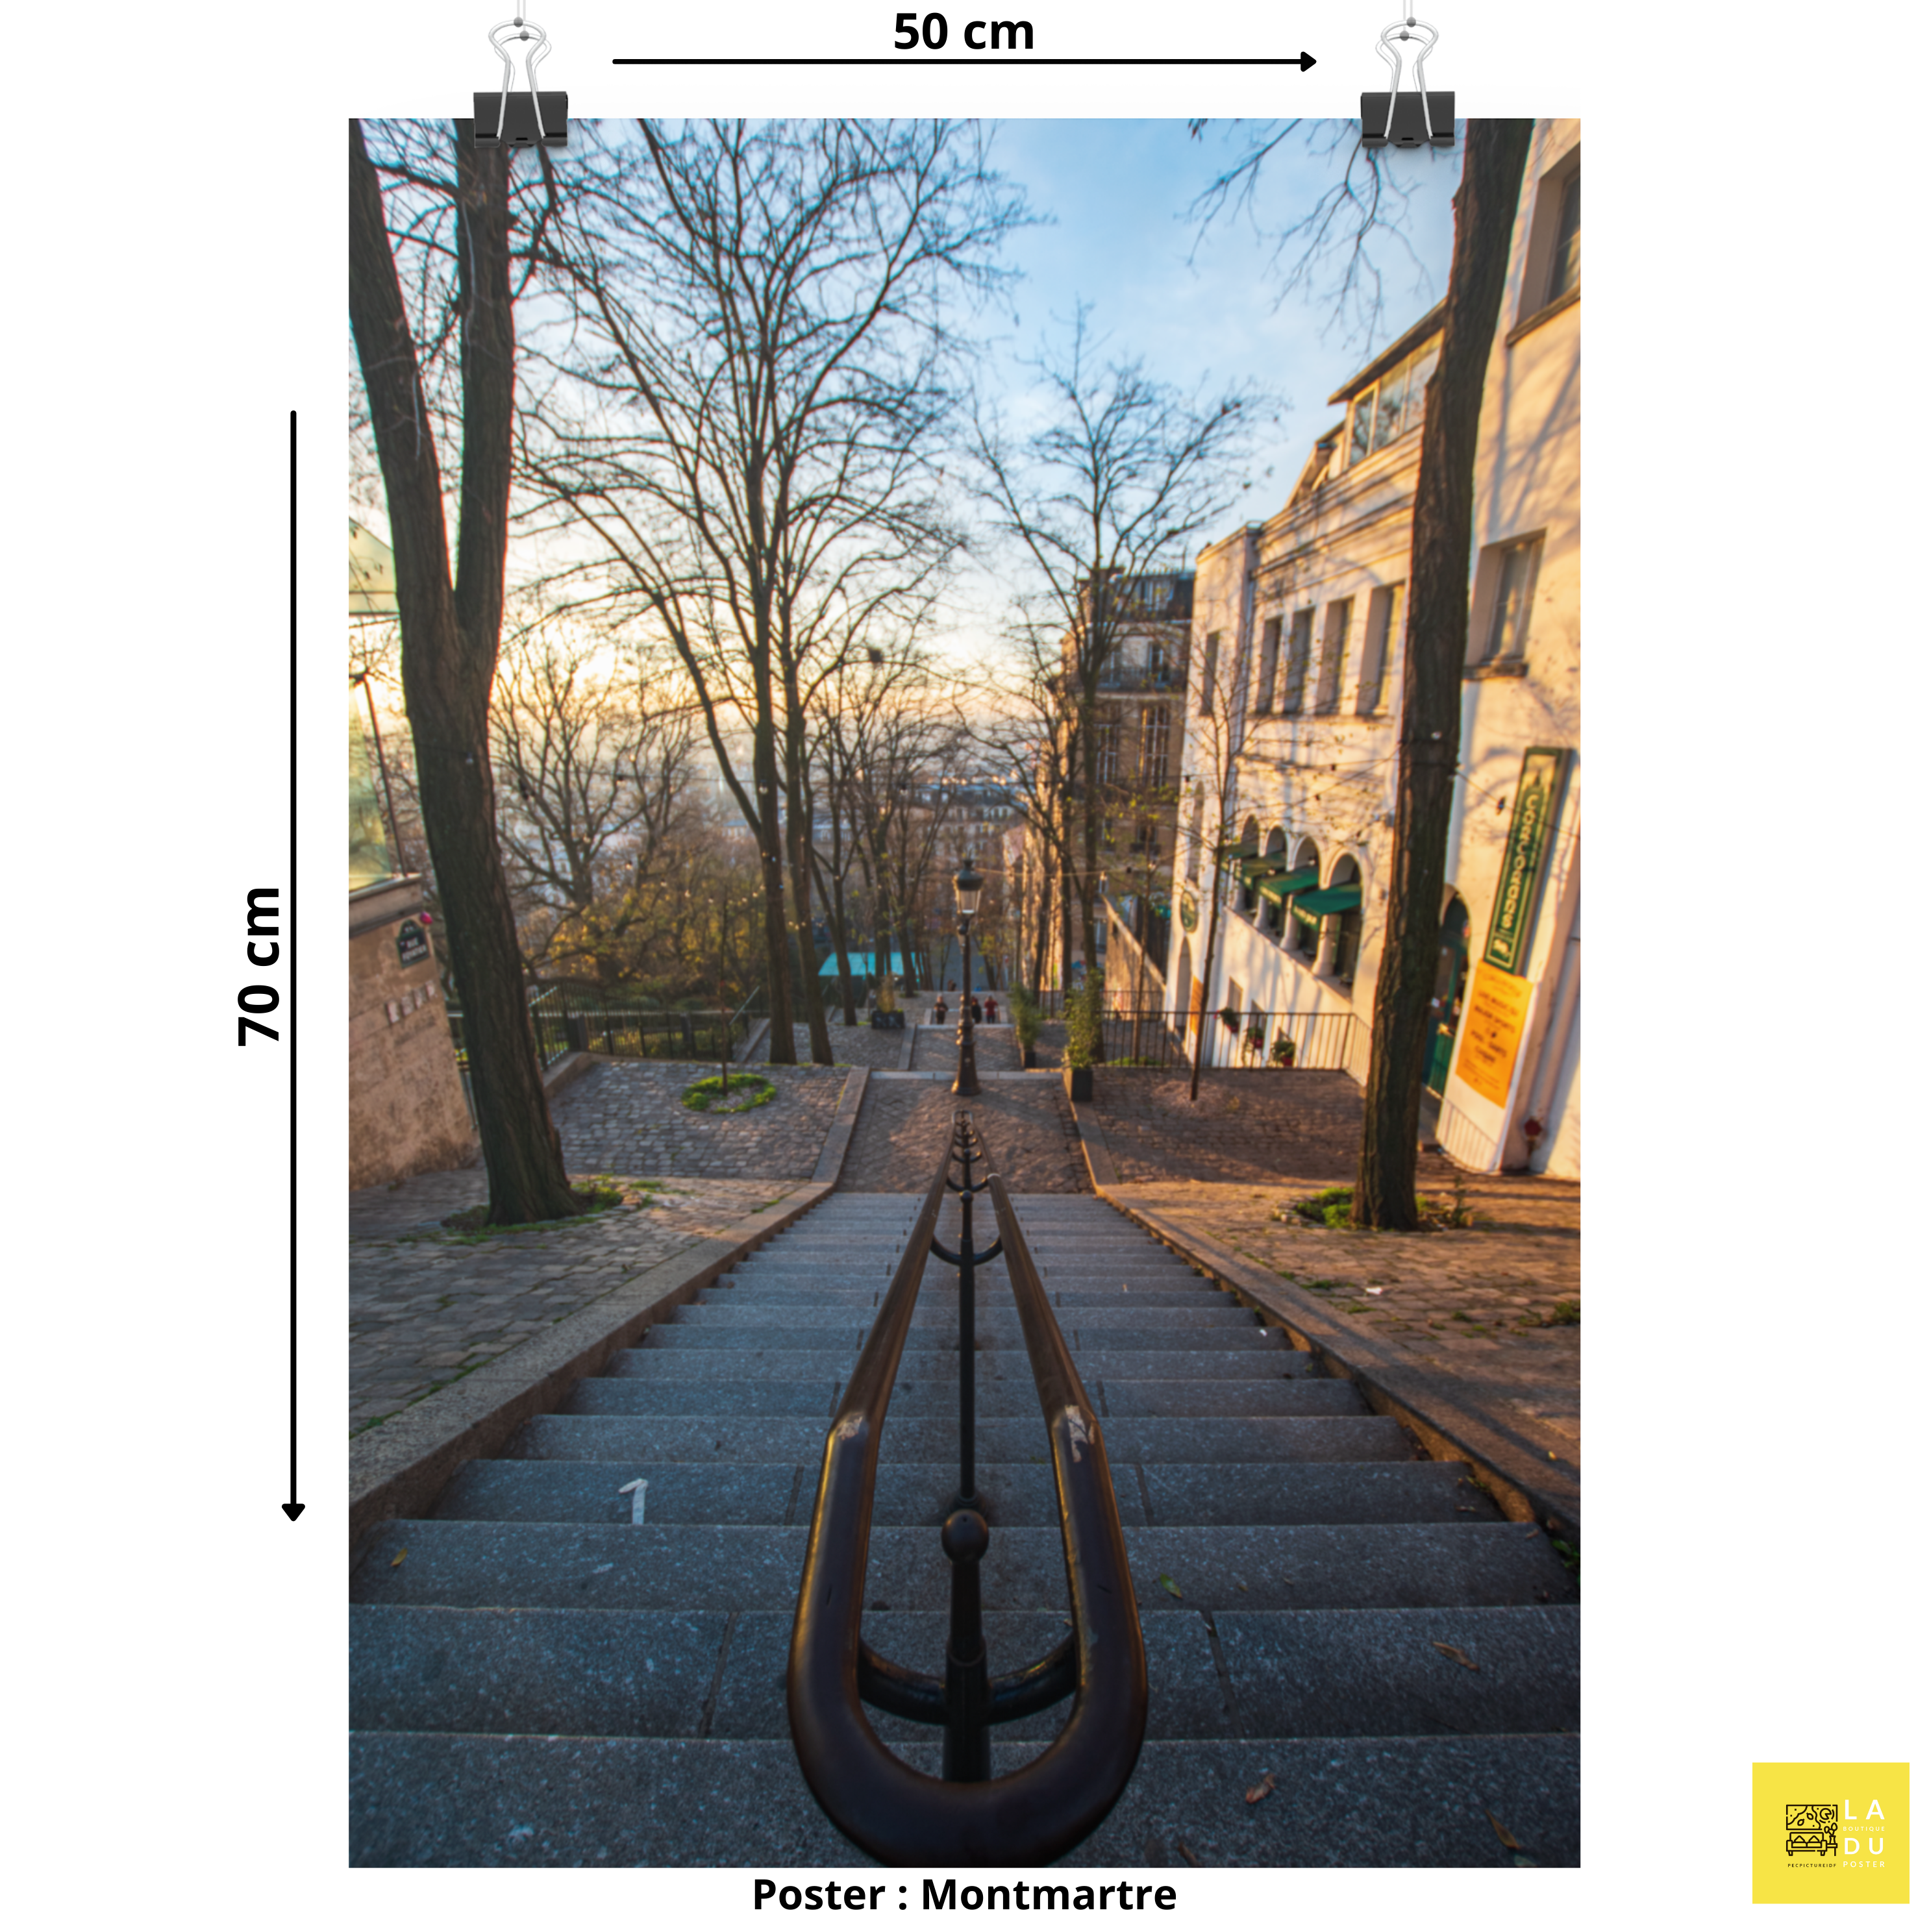 Montmartre escalier - Poster - La boutique du poster Français